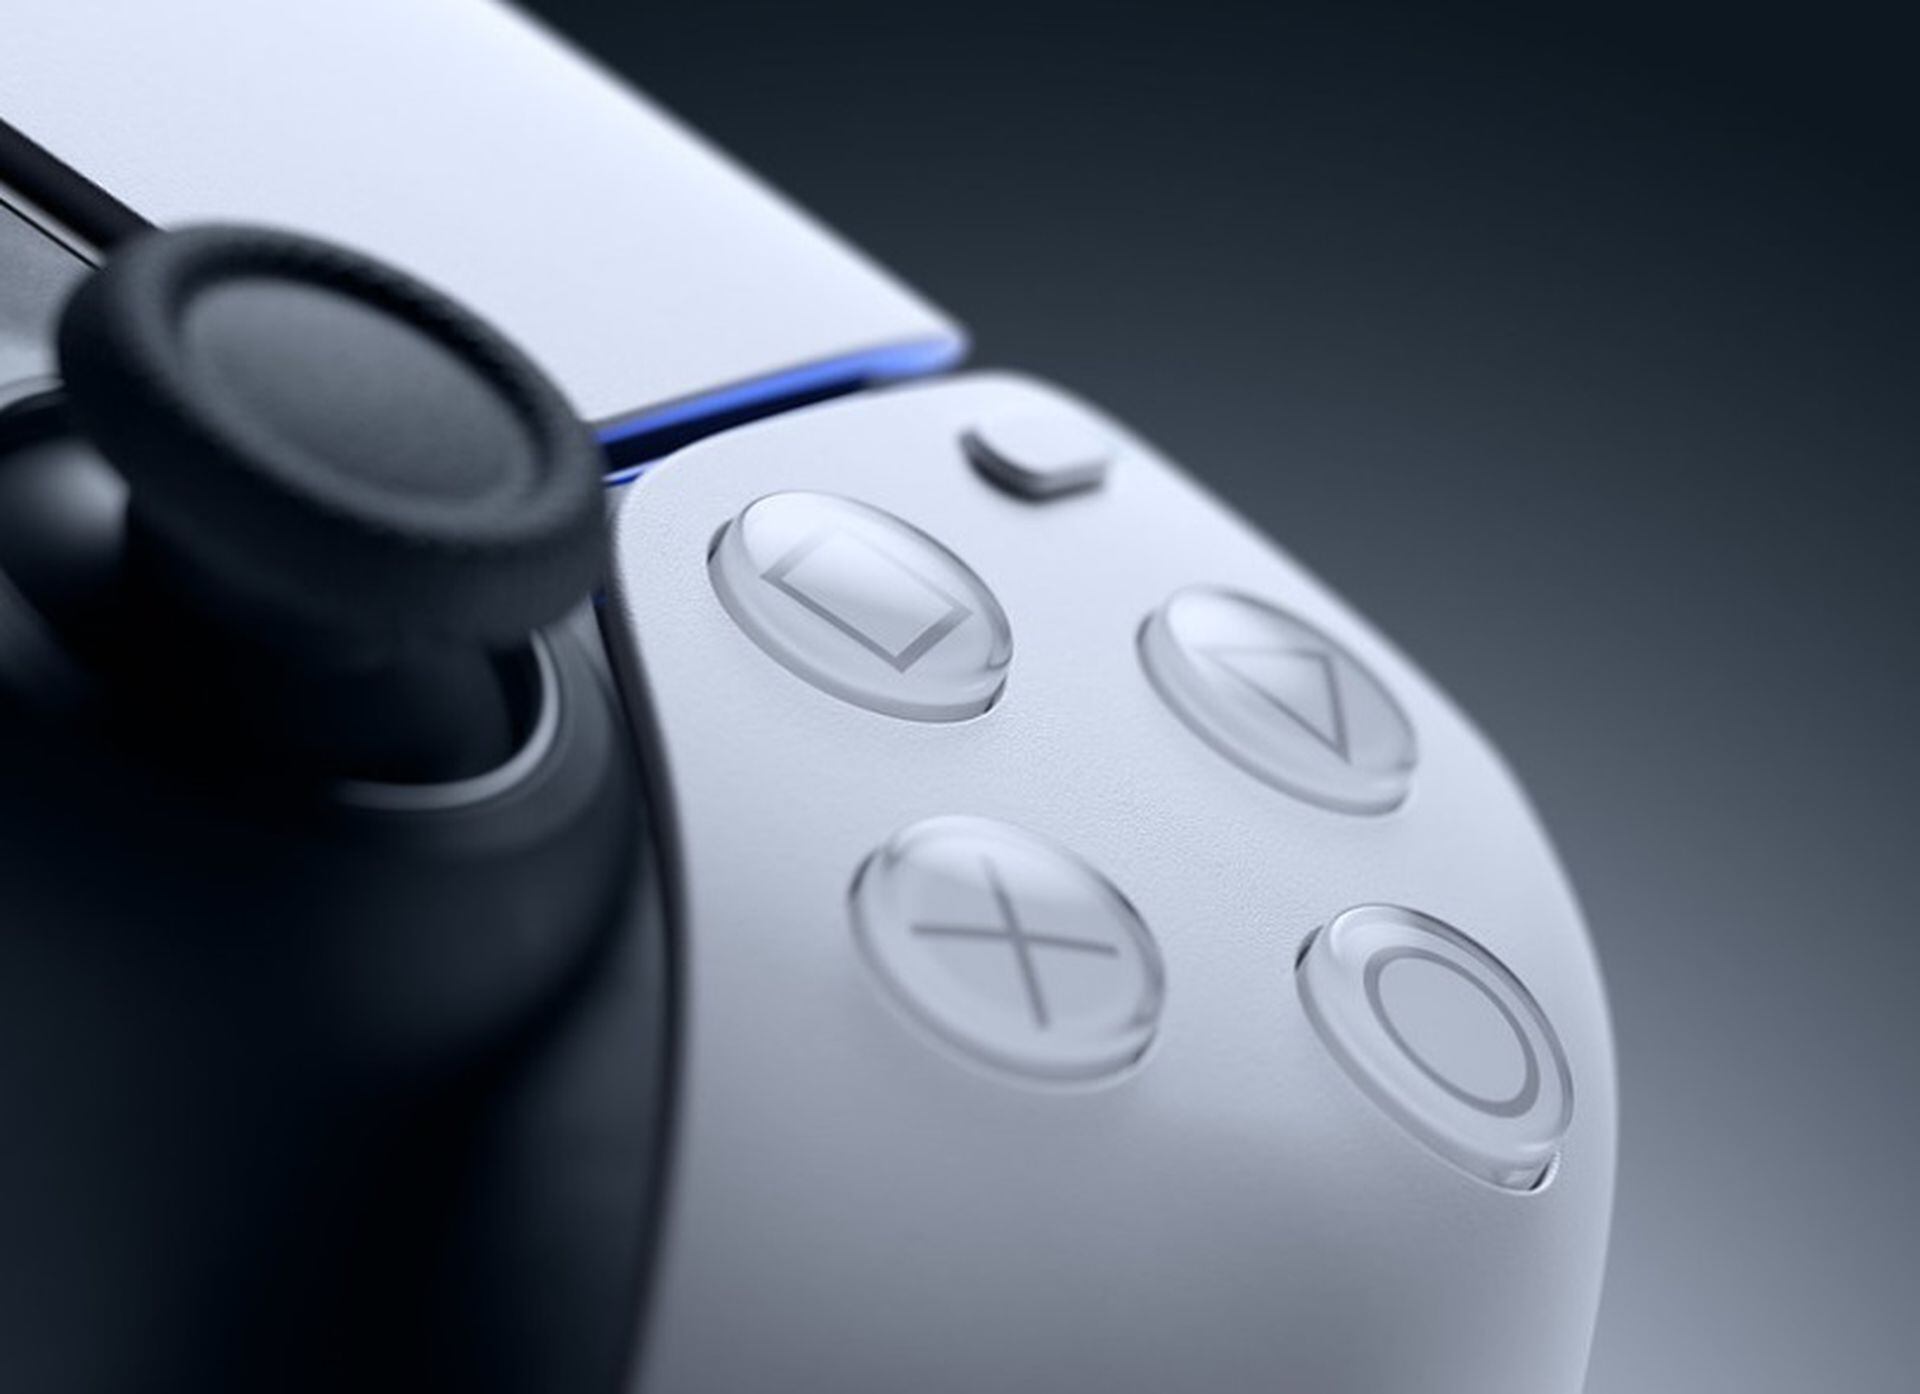 PlayStation Plus: se revelan los juegos gratuitos de PS4 y PS5 para  diciembre